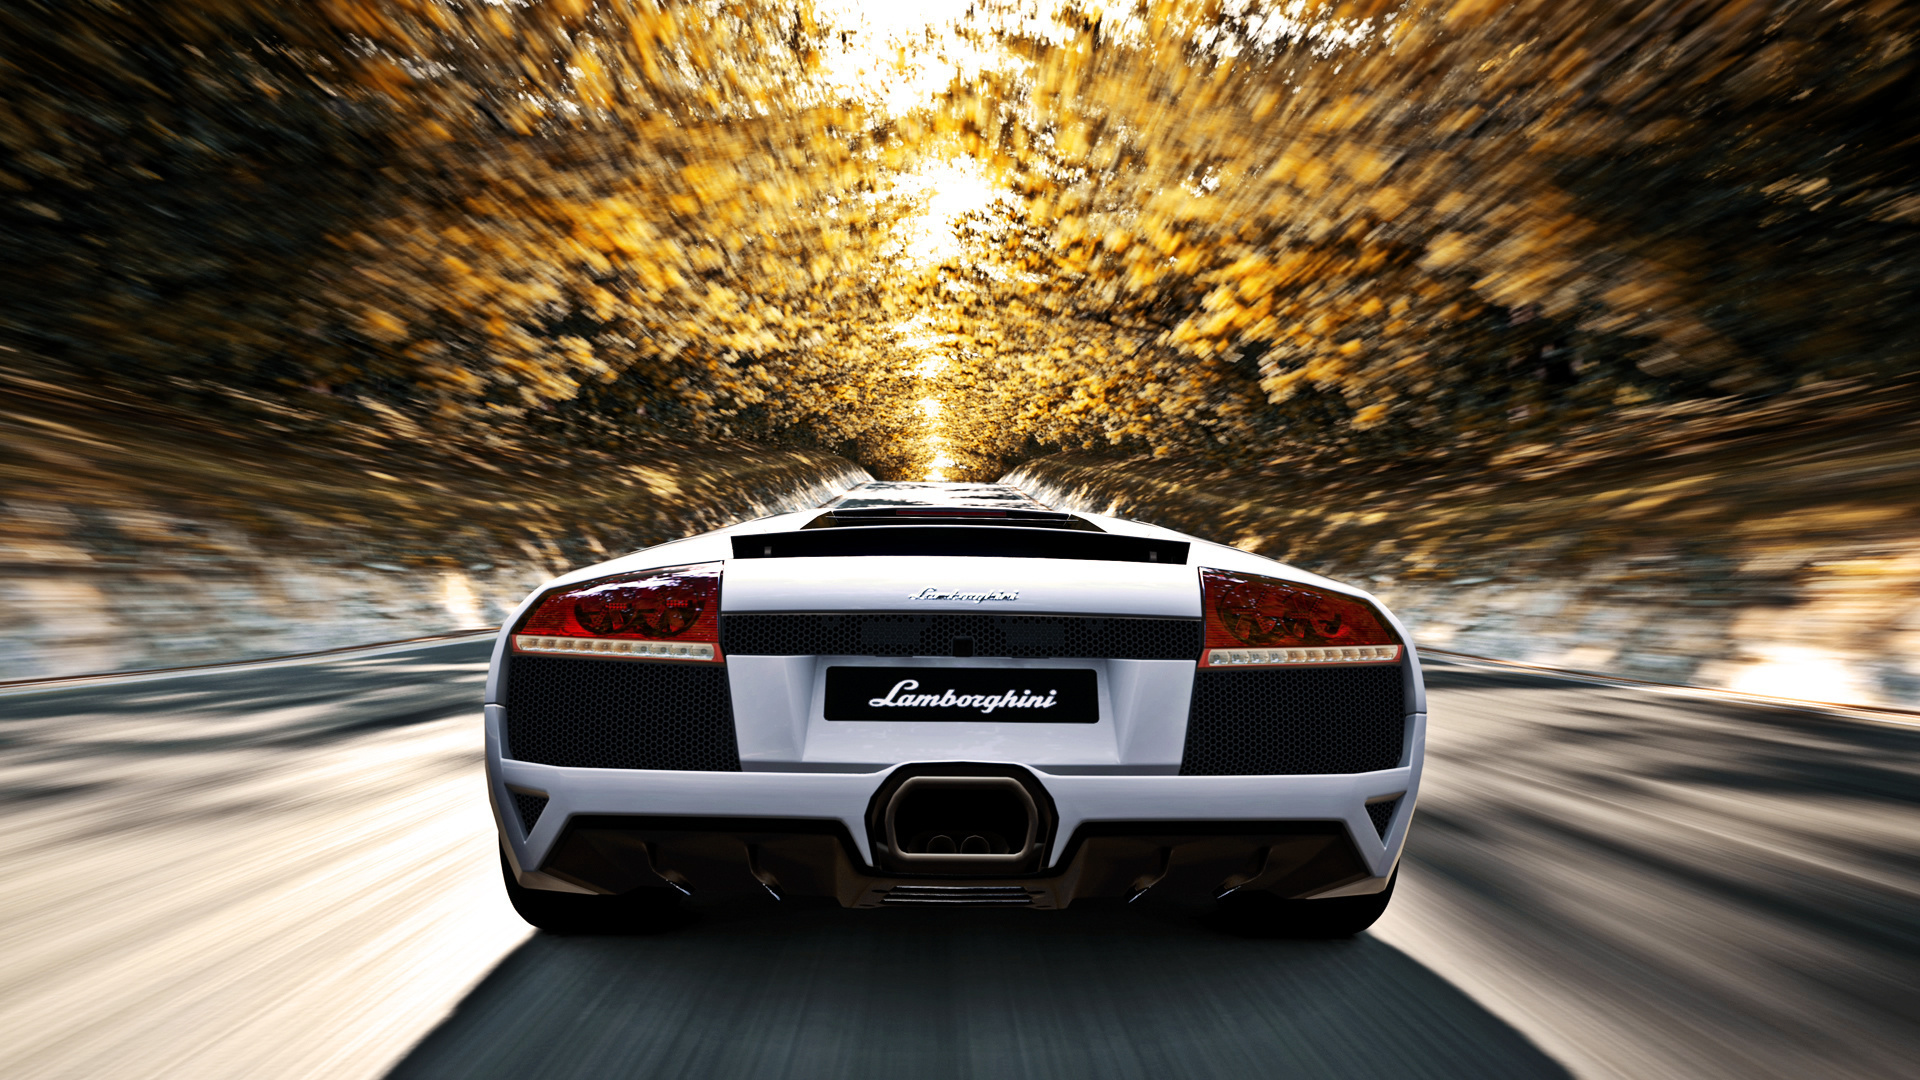 Lamborghini Wallpaper Hd